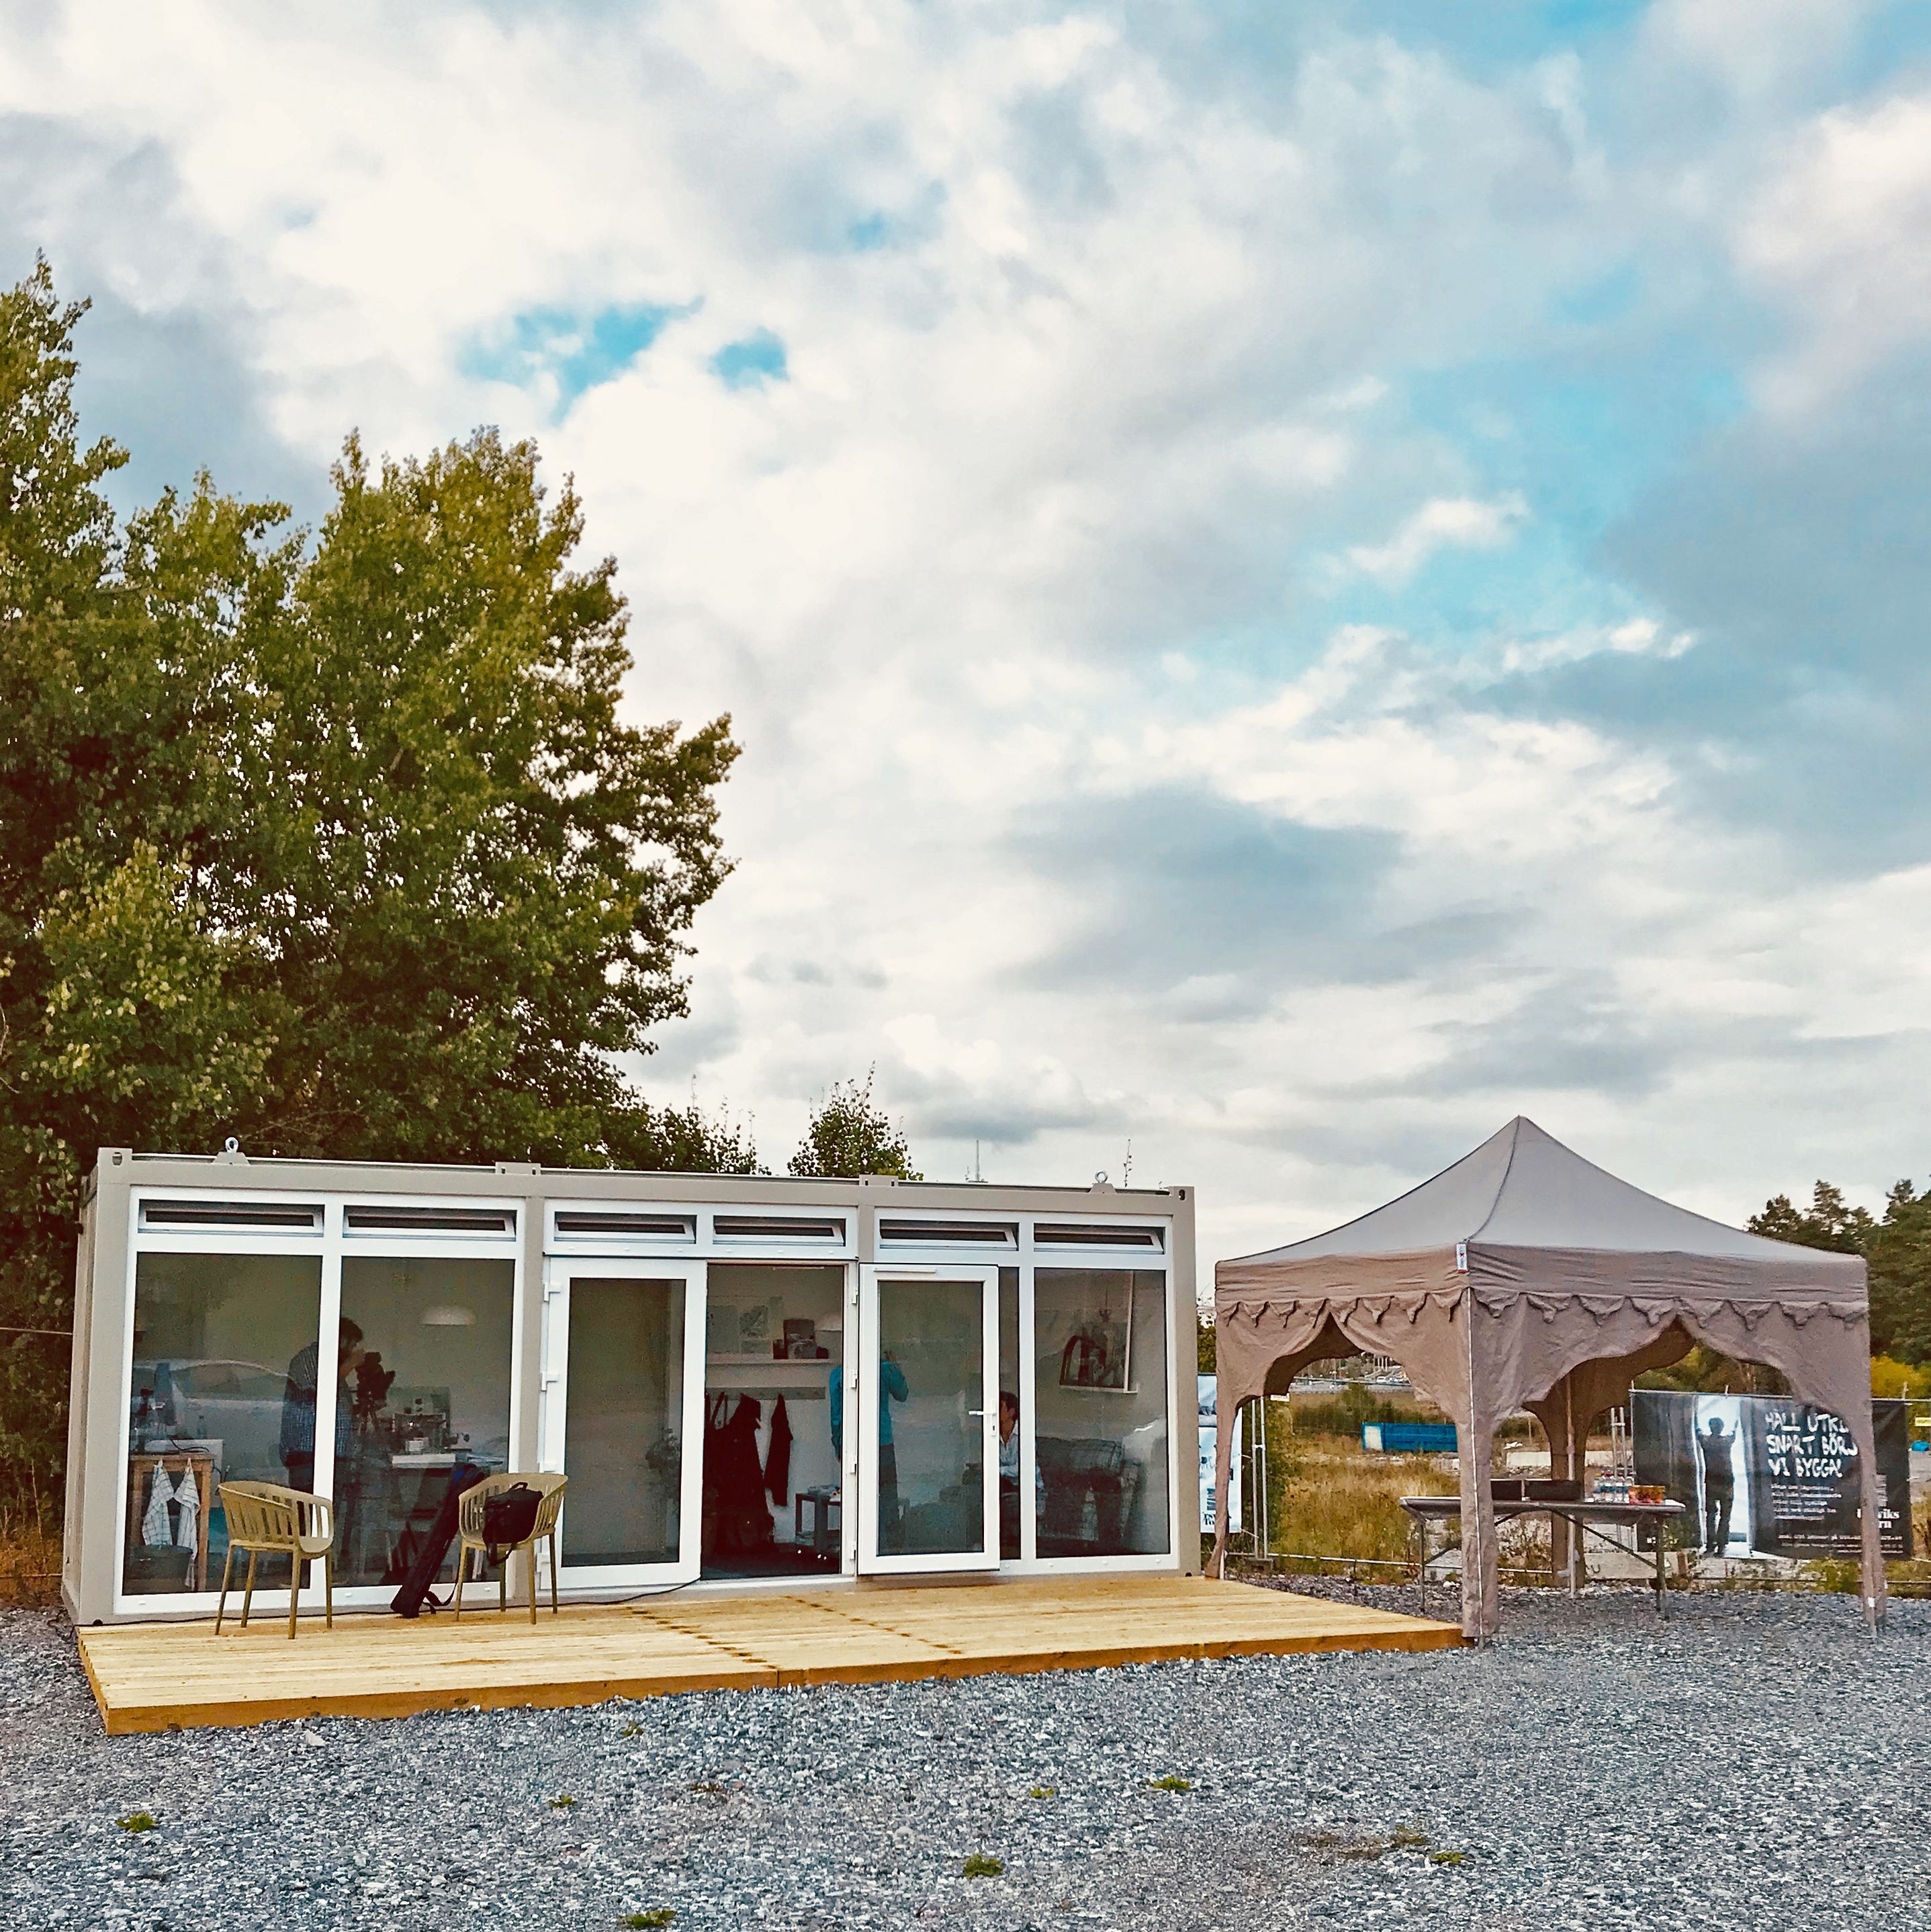 Centro visitatori per progetto di edilizia residenziale, Sundbyberg (SE)